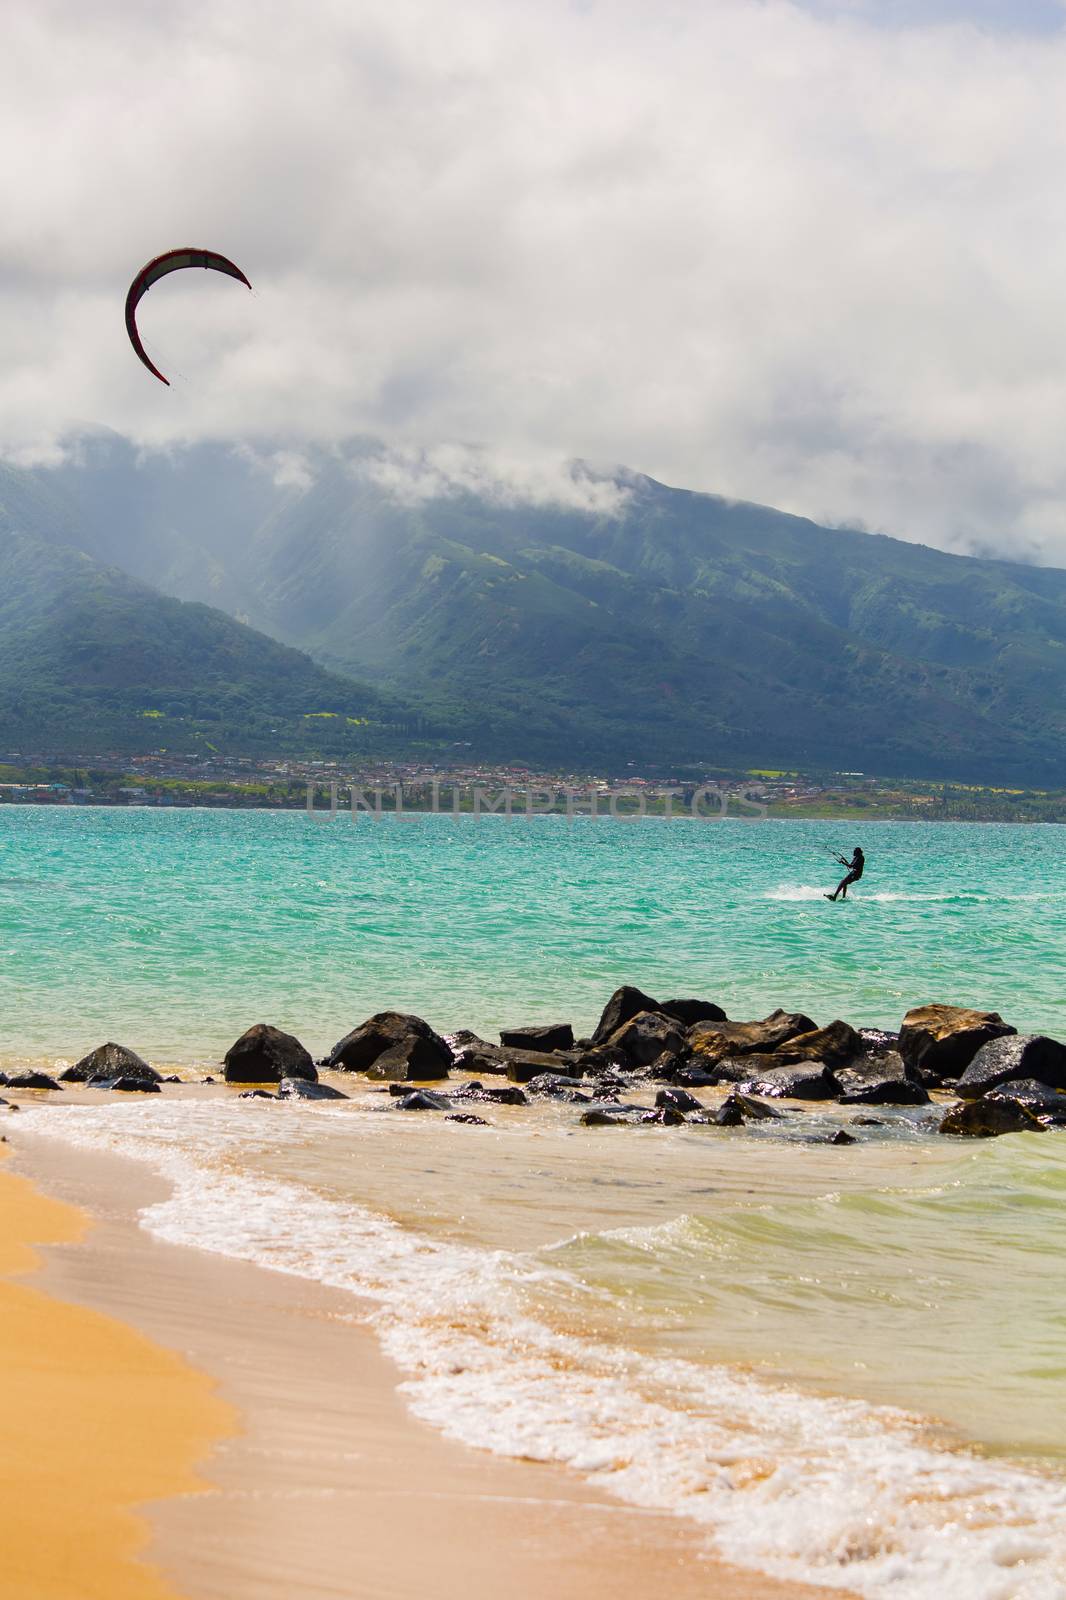 Kite Surfer on Beach by Creatista